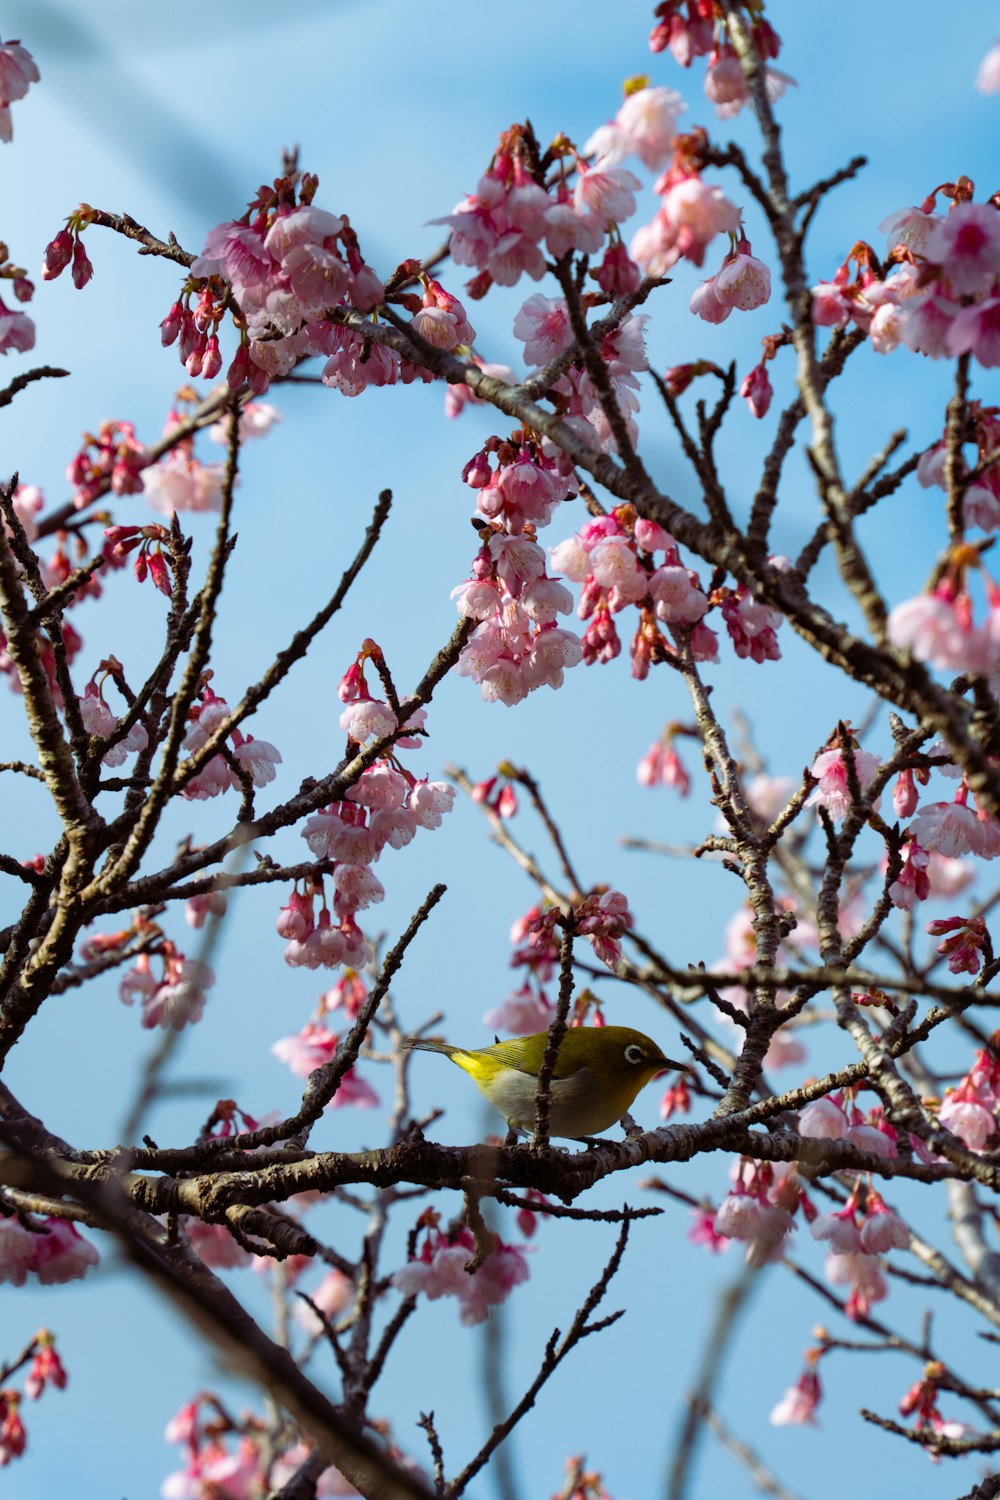 Un oiseau assis sur une branche d’arbre avec des fleurs roses